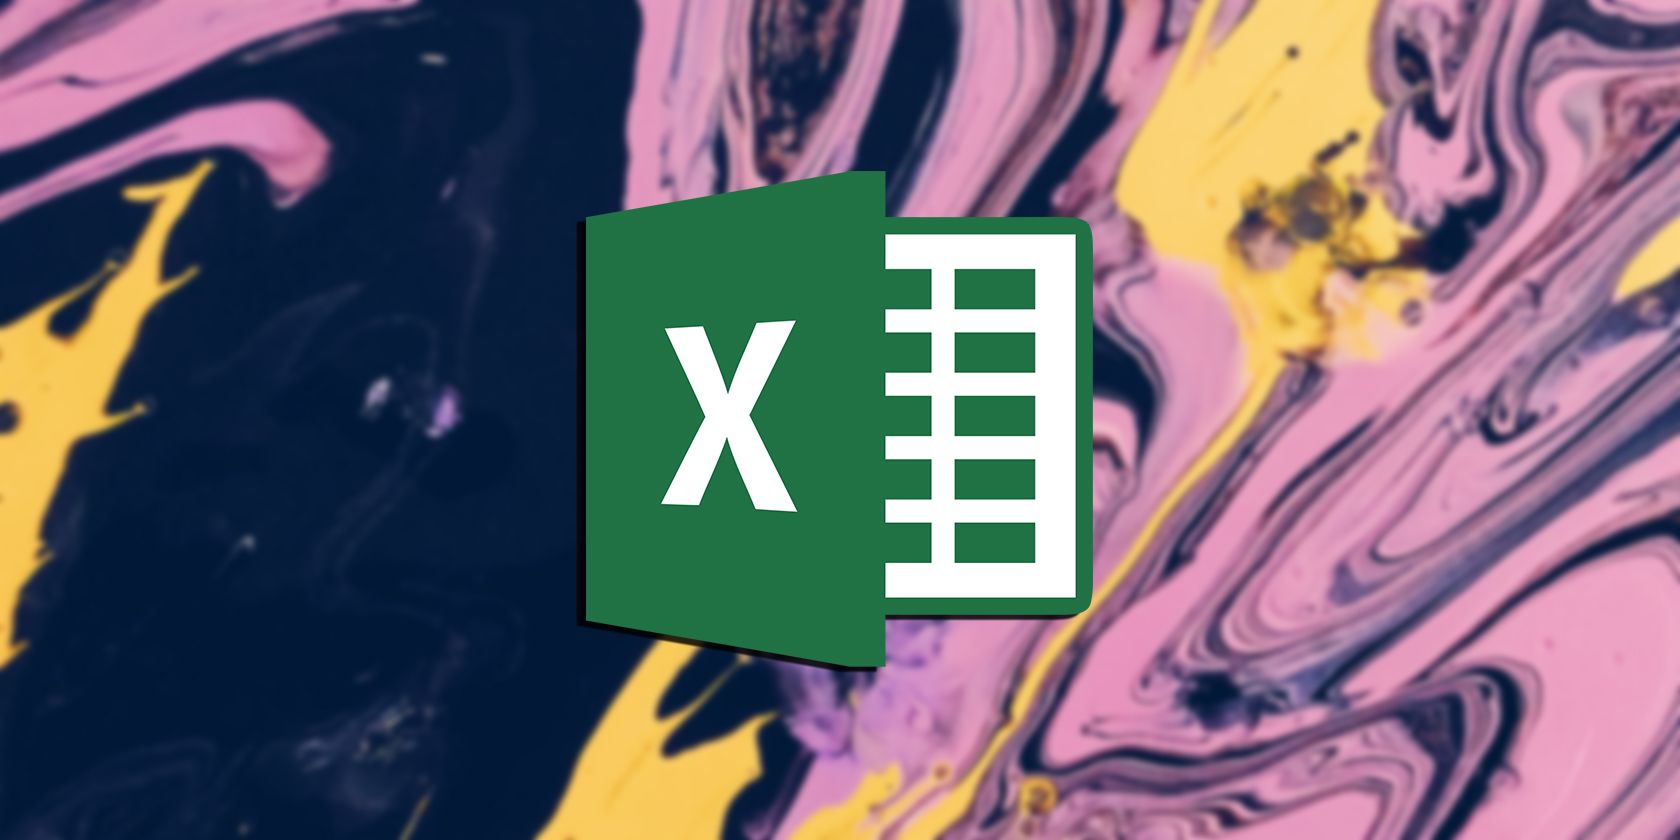 Excel on a splash background.